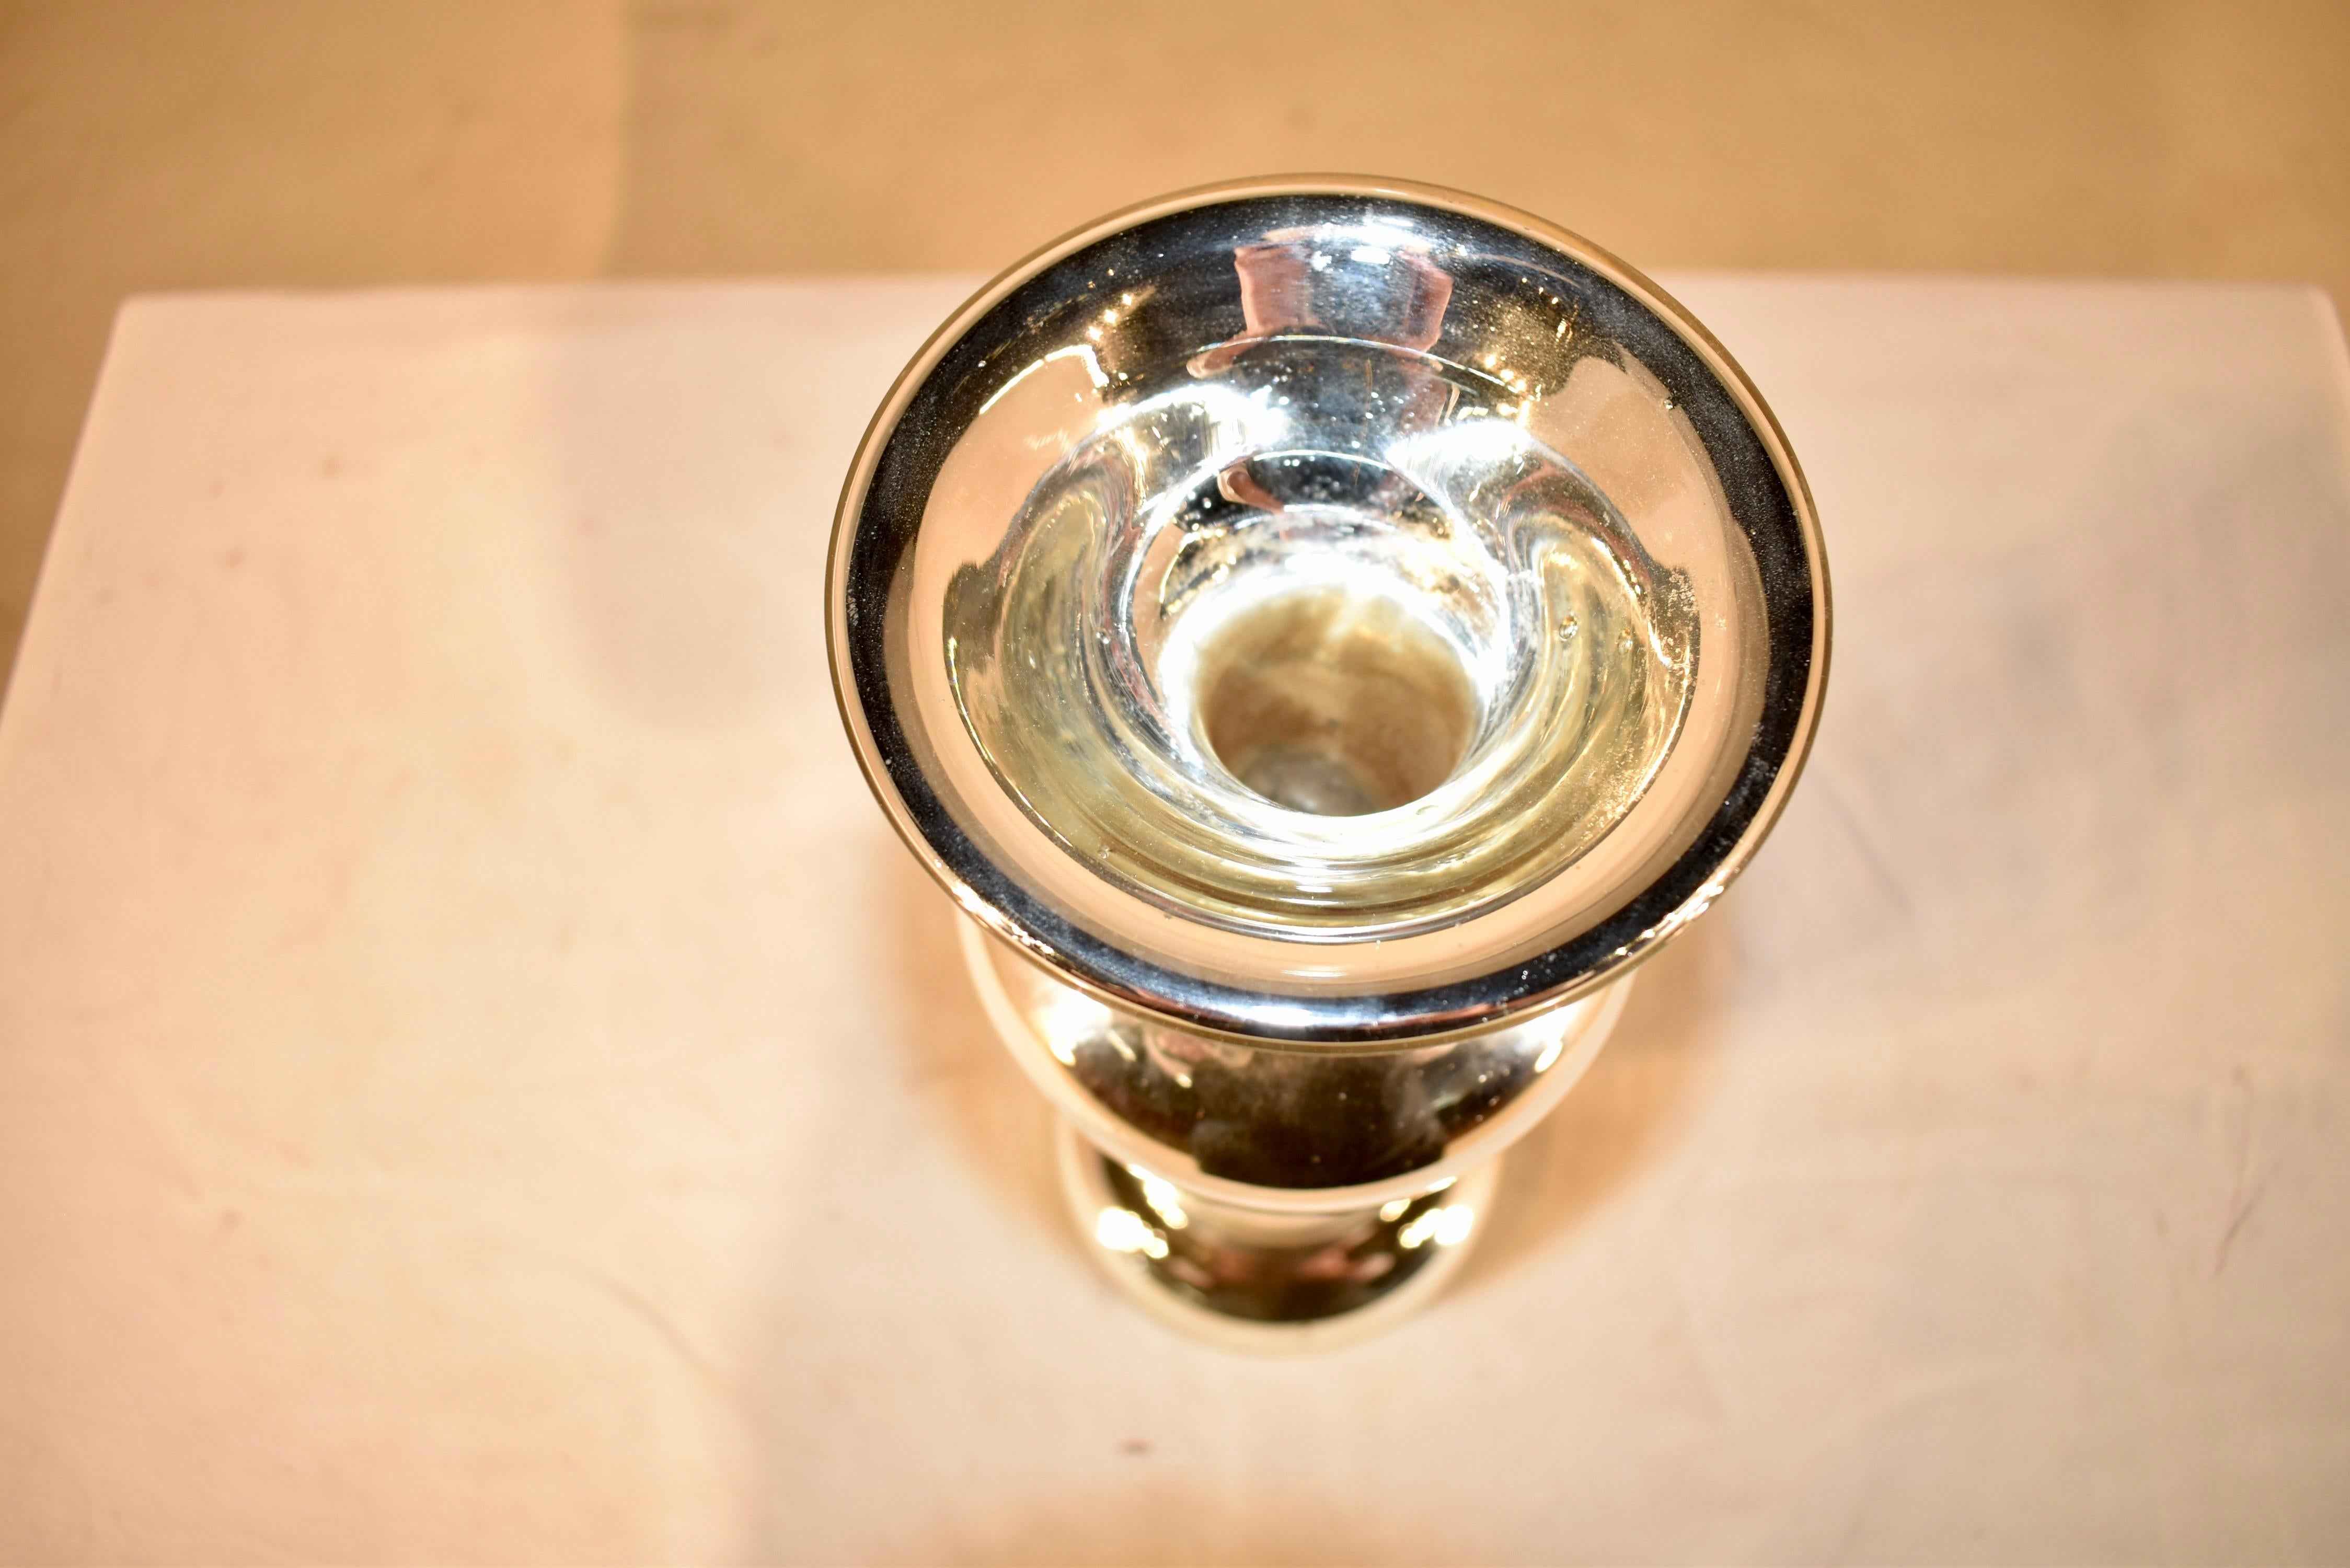 19. Jahrhundert mundgeblasenes Quecksilberglas Kerzenhalter aus England. Er hat eine wunderbare Form und ist von reicher silberner Farbe. Ideal für die Feiertage!